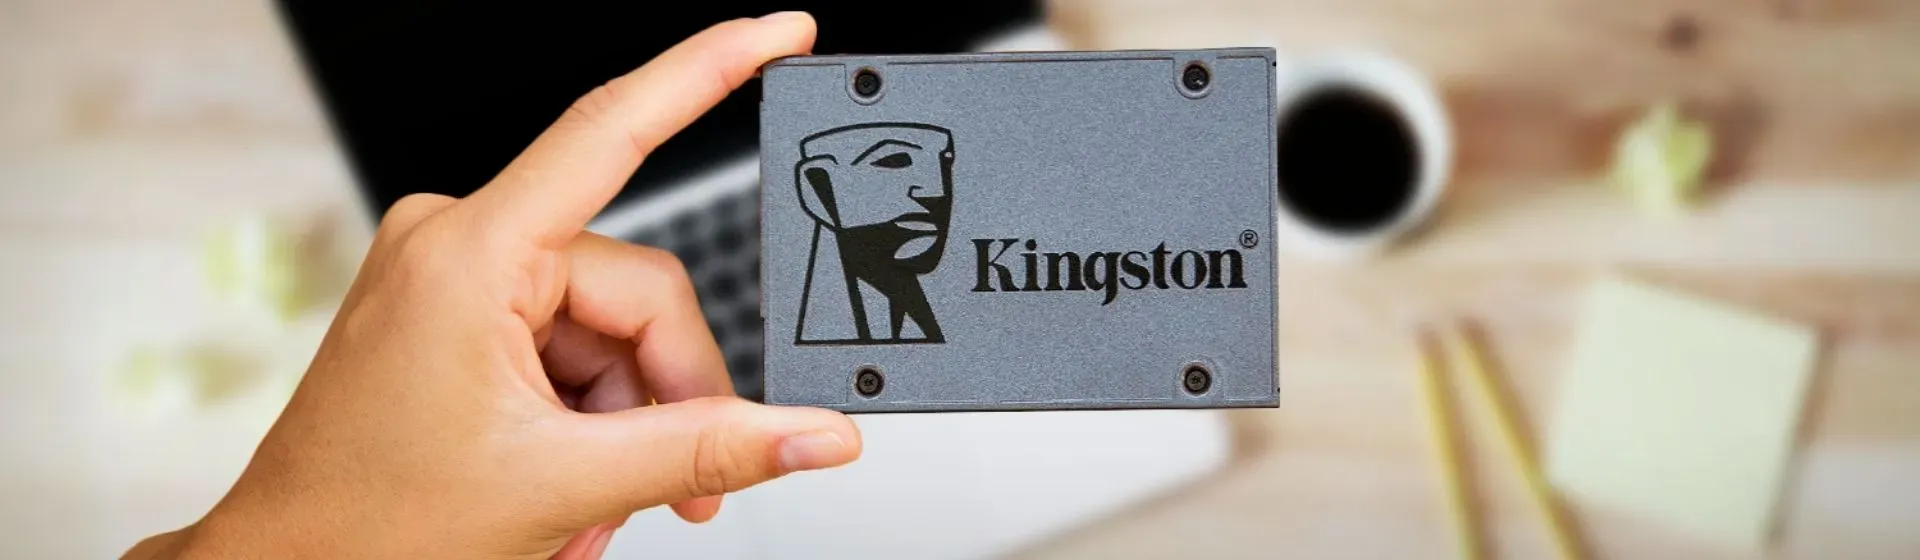 SSD Kingston: melhores 6 modelos para acelerar seu PC